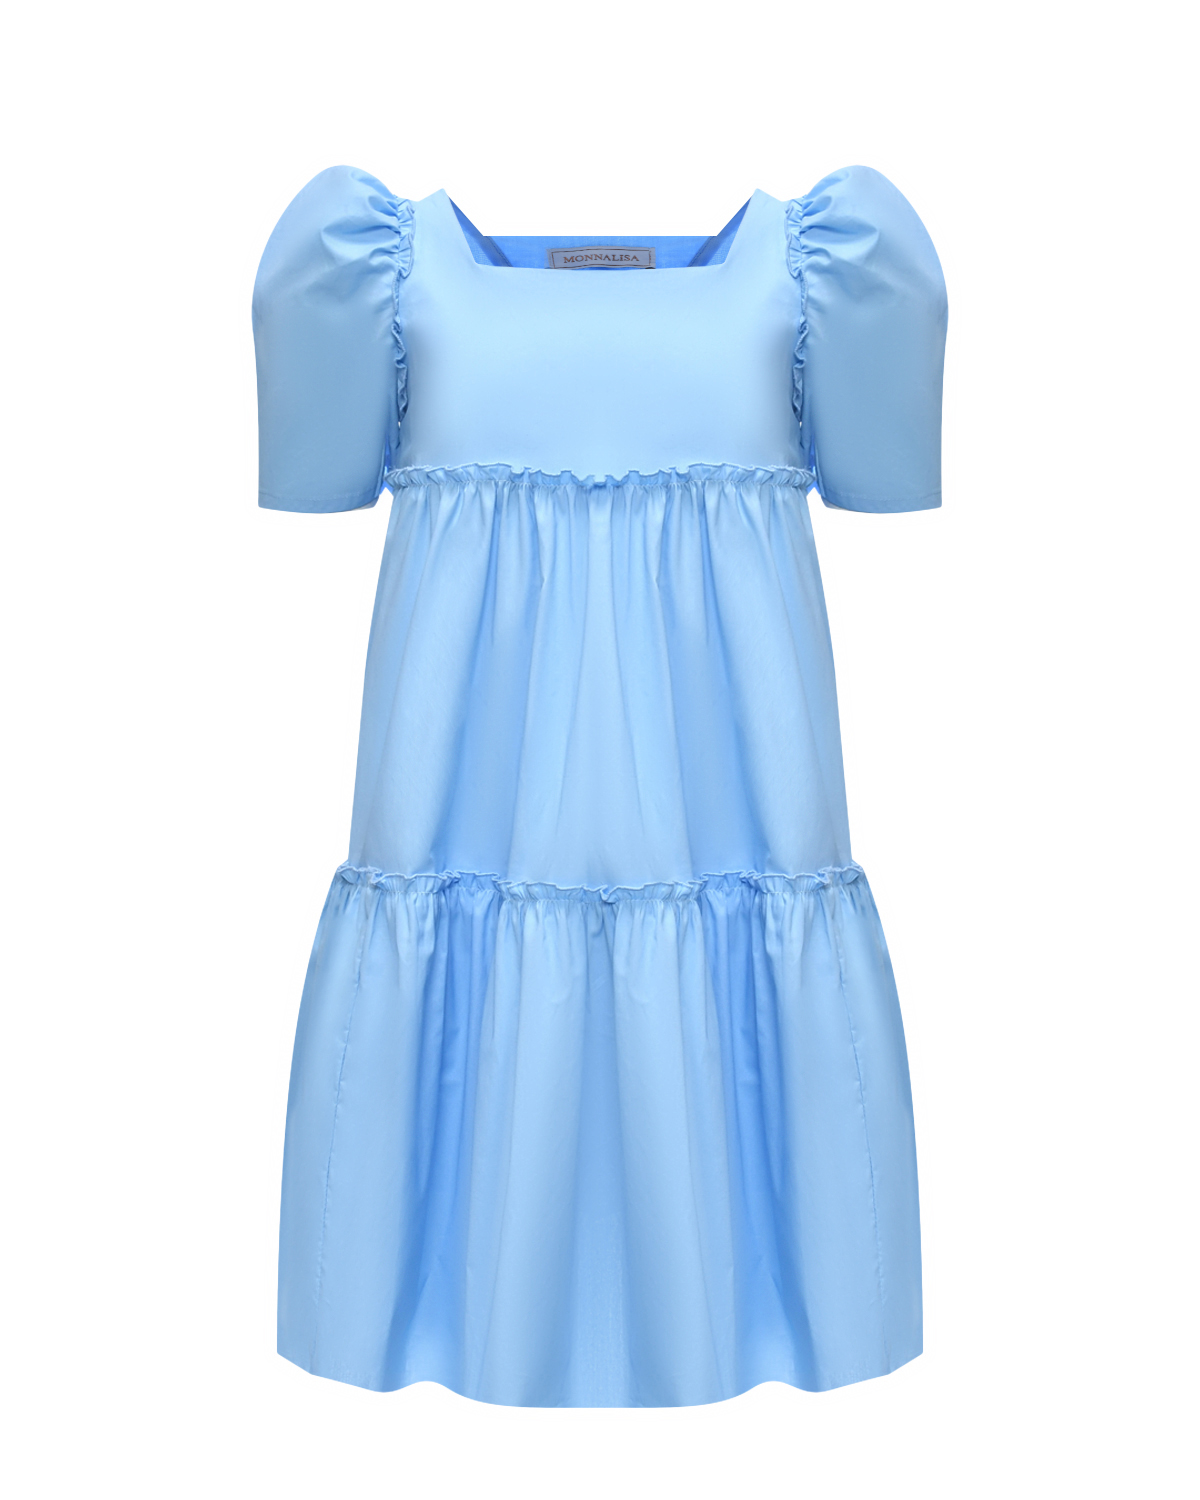 Платье с рукавами-фонариками Monnalisa, размер 116, цвет голубой - фото 1